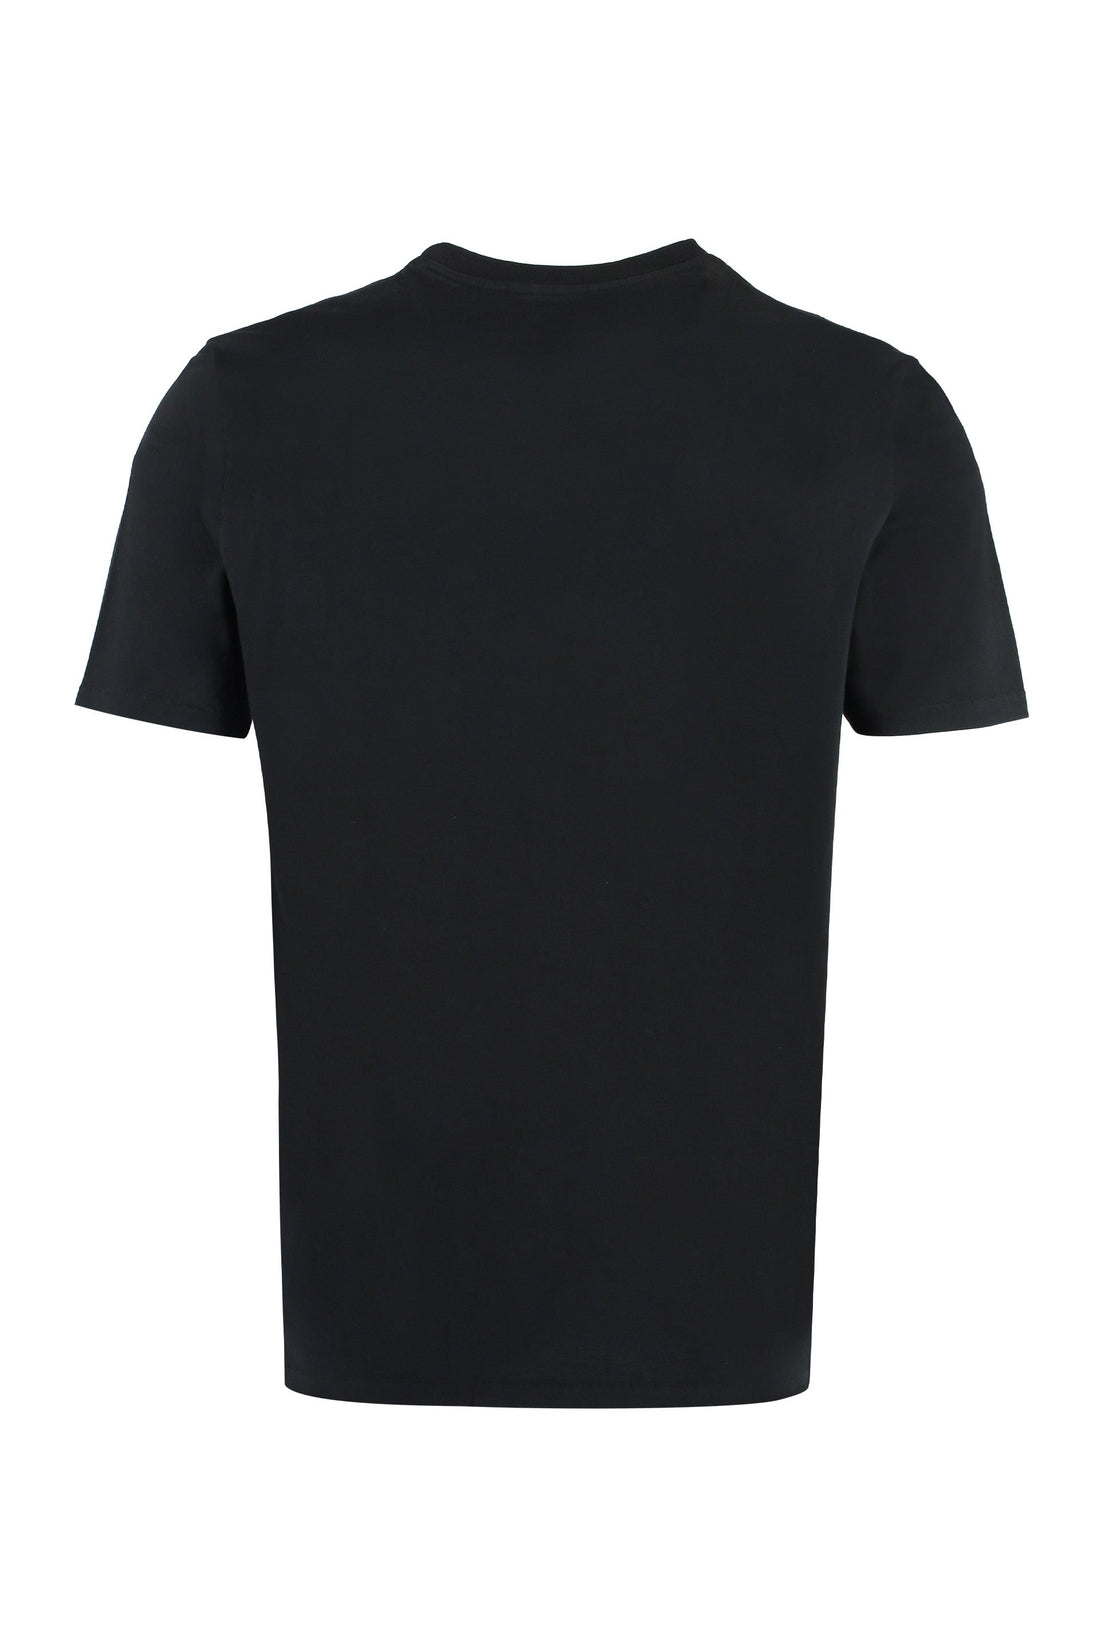 Parajumpers-OUTLET-SALE-Cotton T-shirt-ARCHIVIST